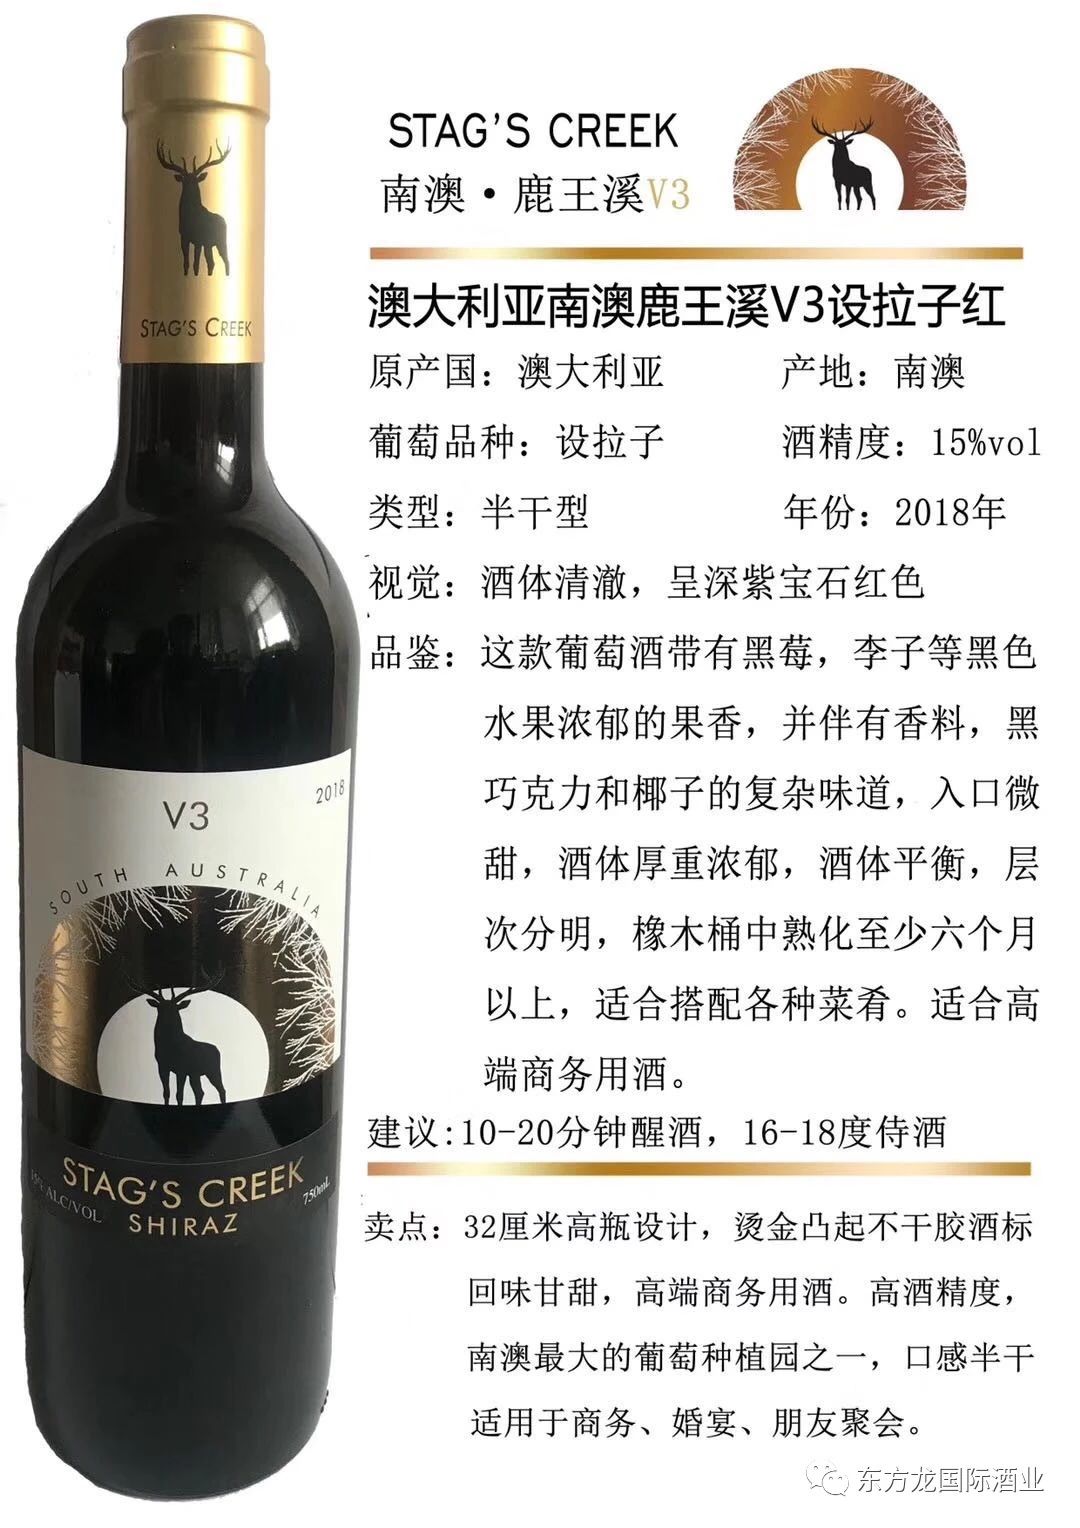 东方龙国际酒业再次参展Interwine | 进口葡萄酒品牌专业运营商